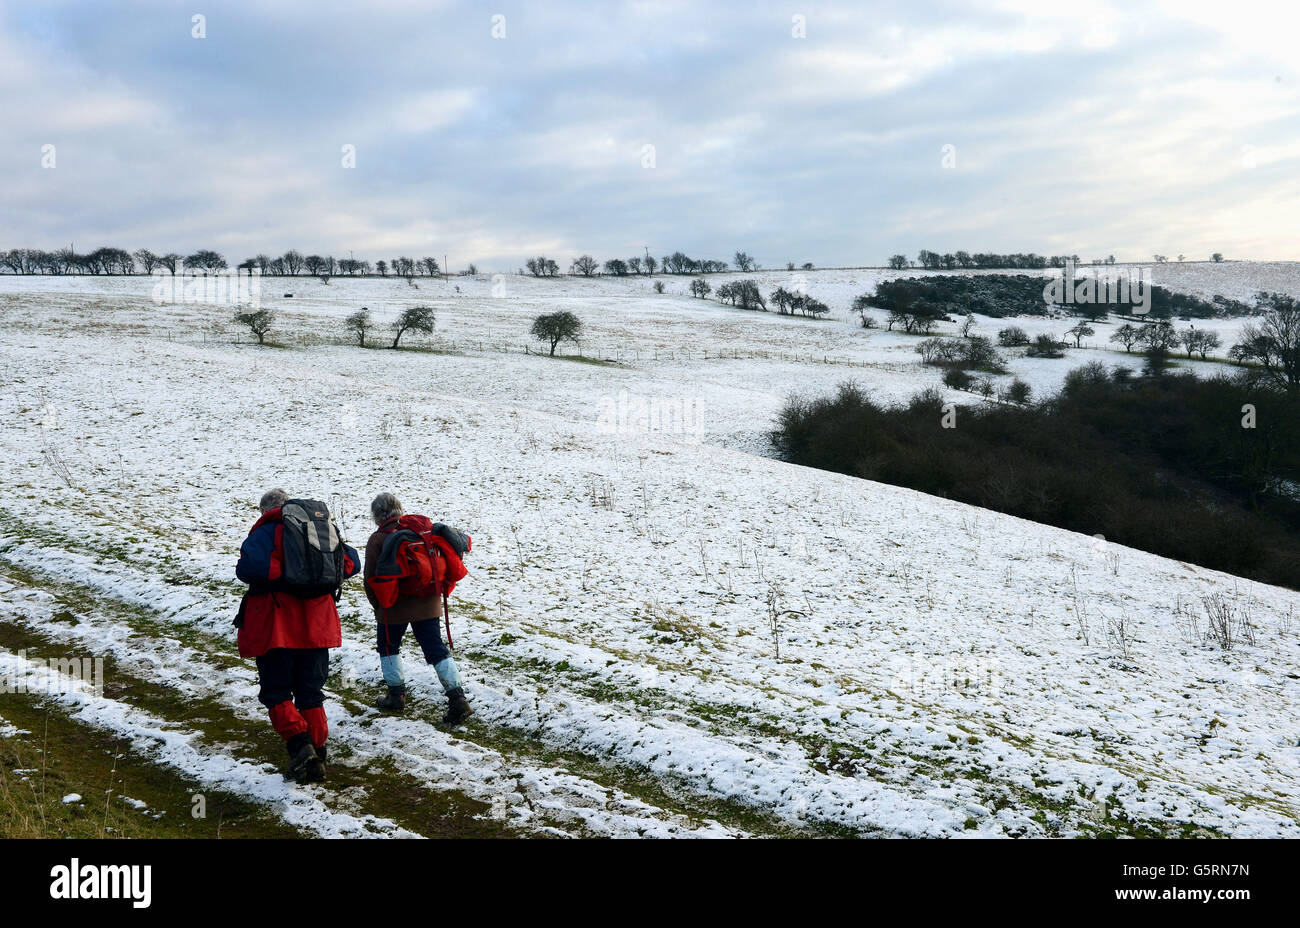 La neve sul terreno alto dei Wolds dello Yorkshire ai pascoli di Millington, vicino a Pocklington, dà agli escursionisti un assaggio del tempo invernale e della neve che si prevede di influenzare molte aree del Regno Unito nei prossimi giorni. Foto Stock